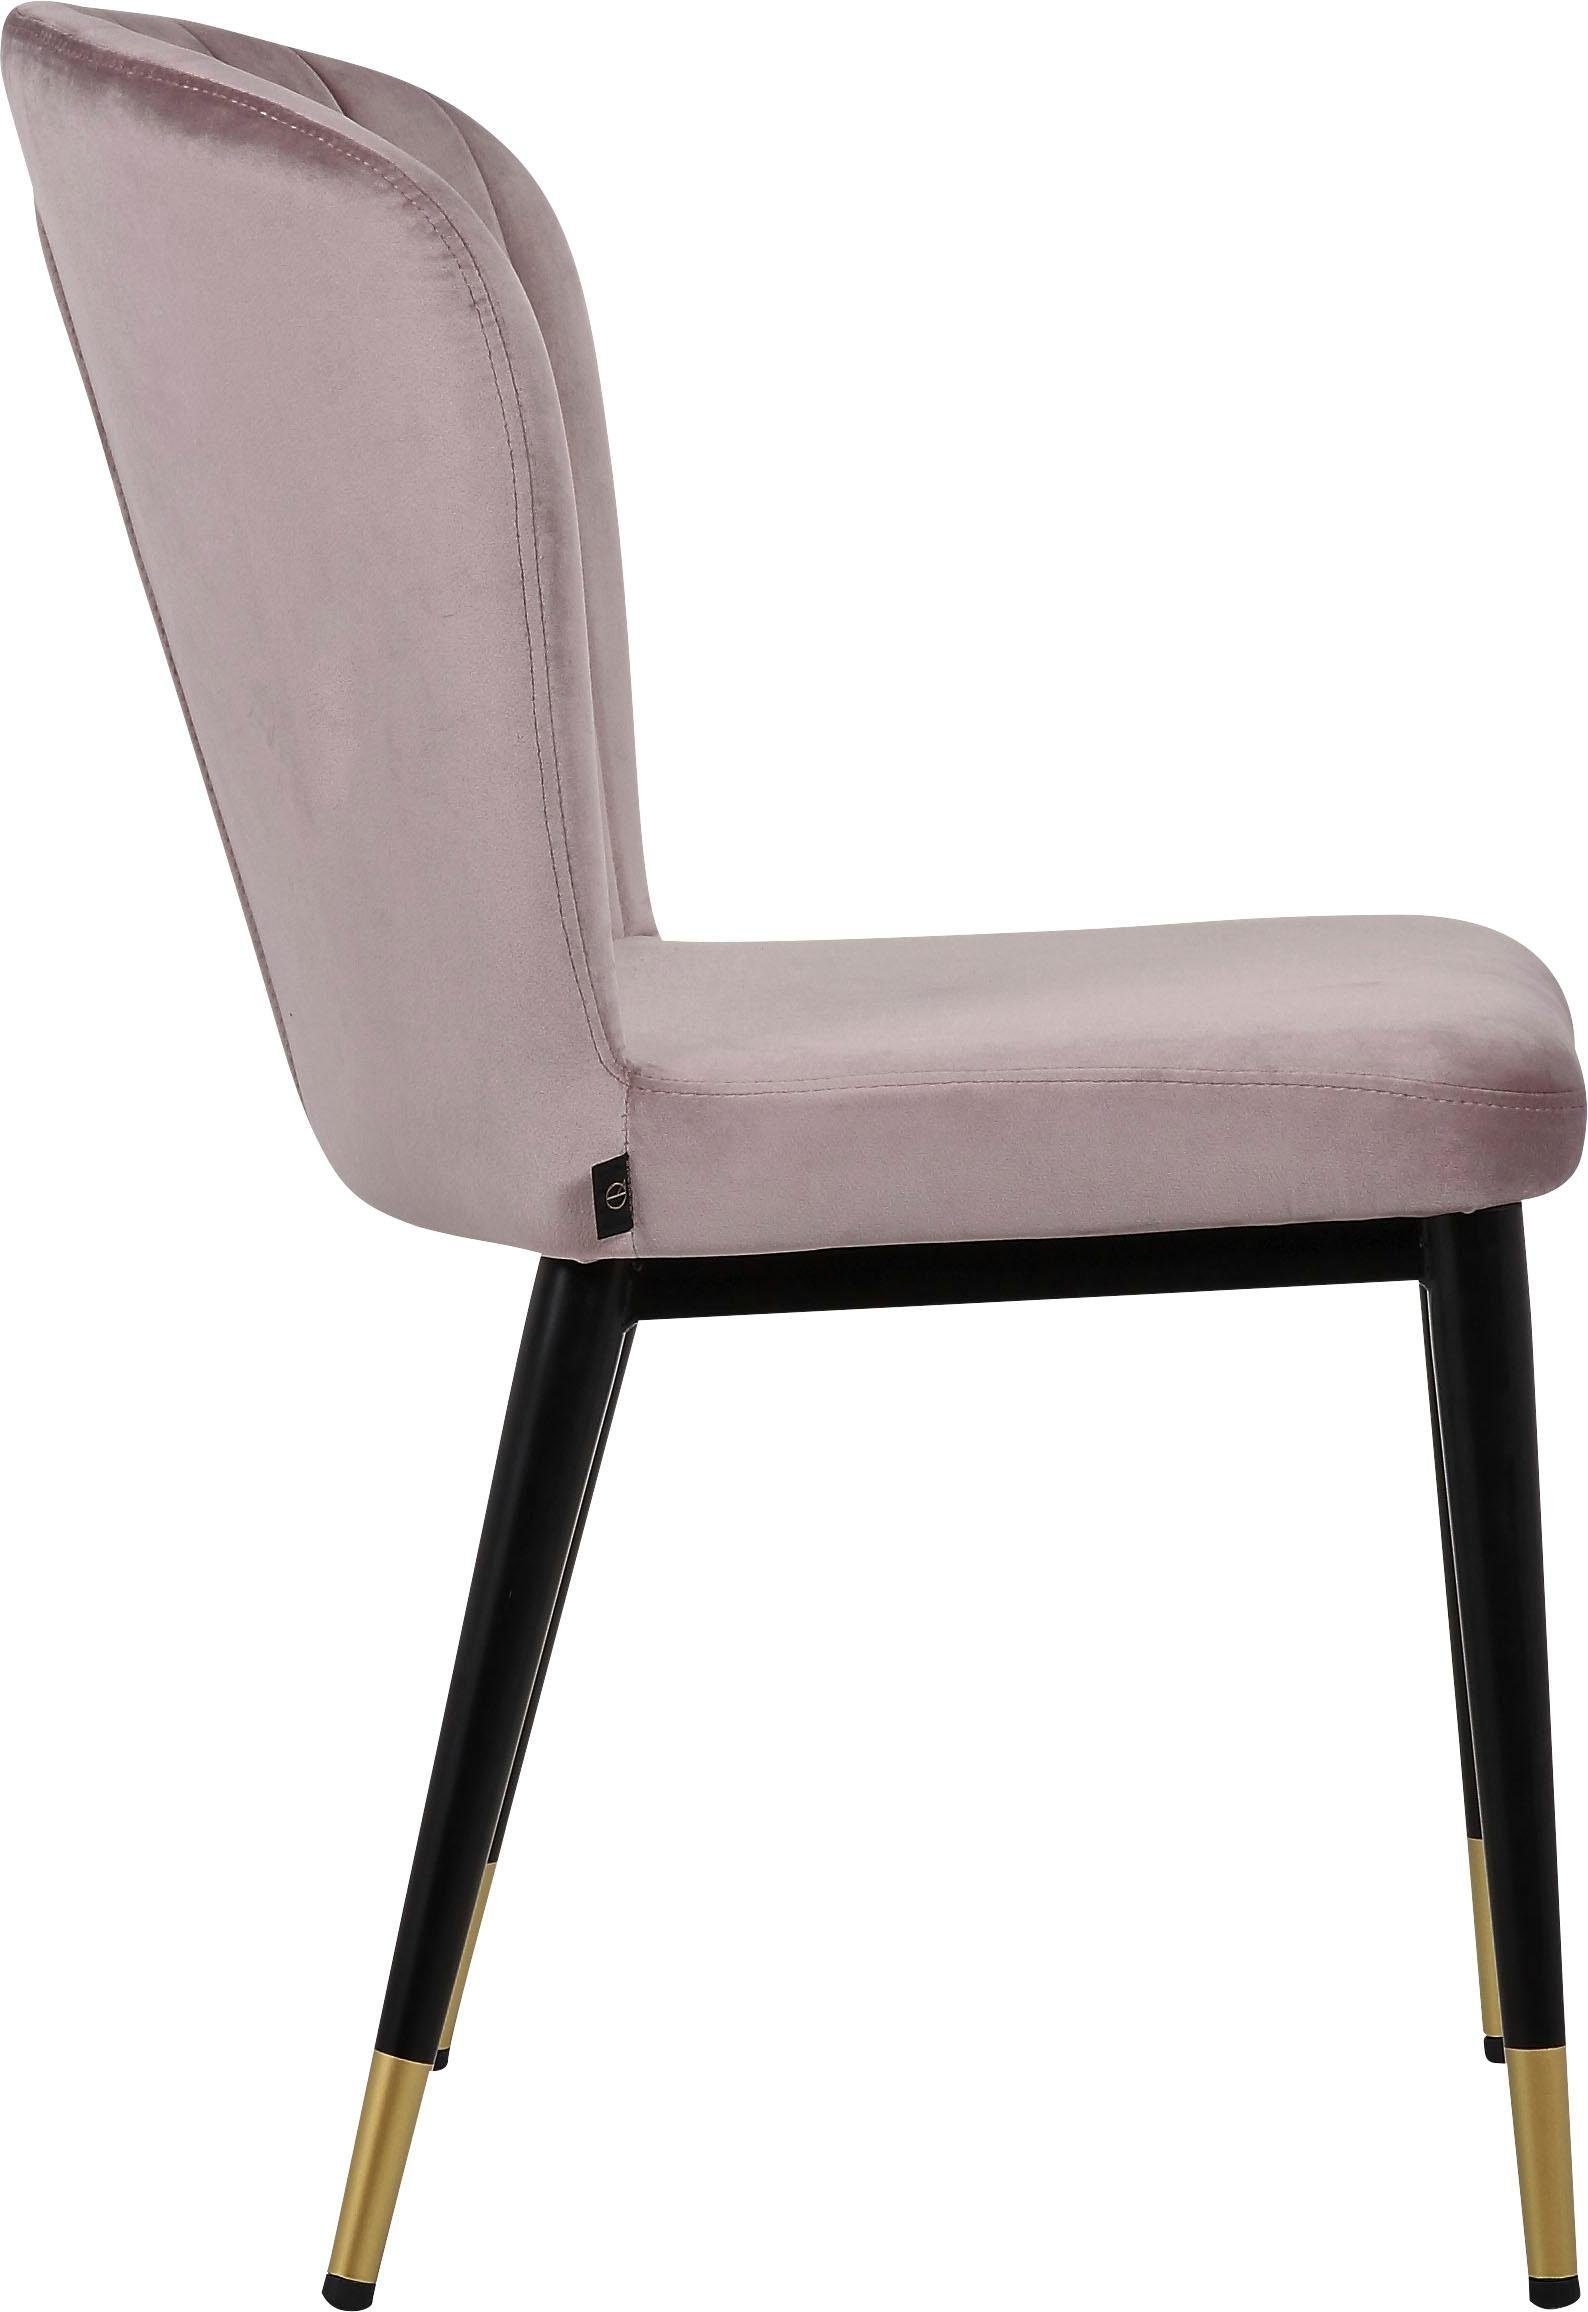 Rückenlehne, modernes Dinan (Set), mit gepolstertem 2er-Set Esszimmerstuhl Leonique und rosa Design Sitz